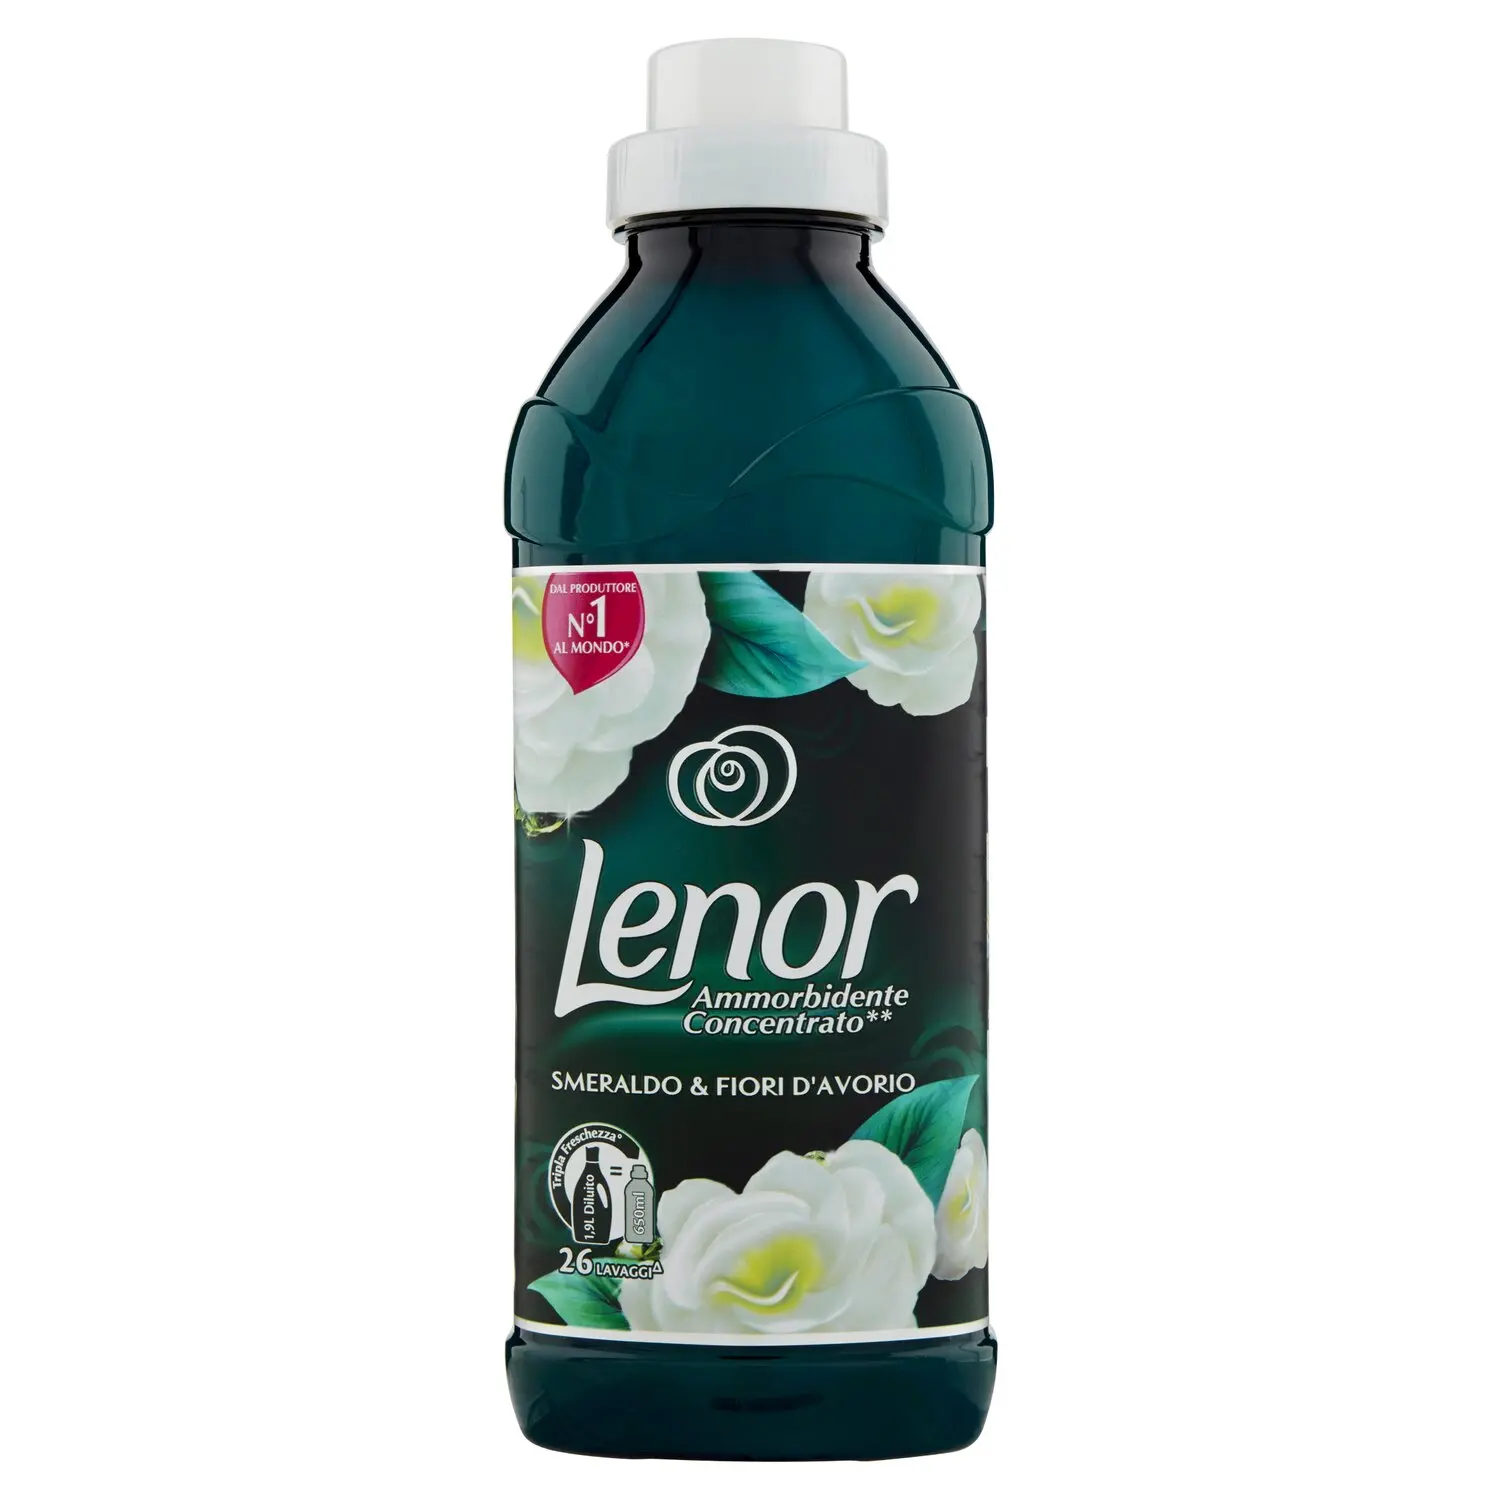 Lenor Ammorbidente Concentrato Smeraldo & Fiori D'Avorio 26 Lavaggi -  650 ml